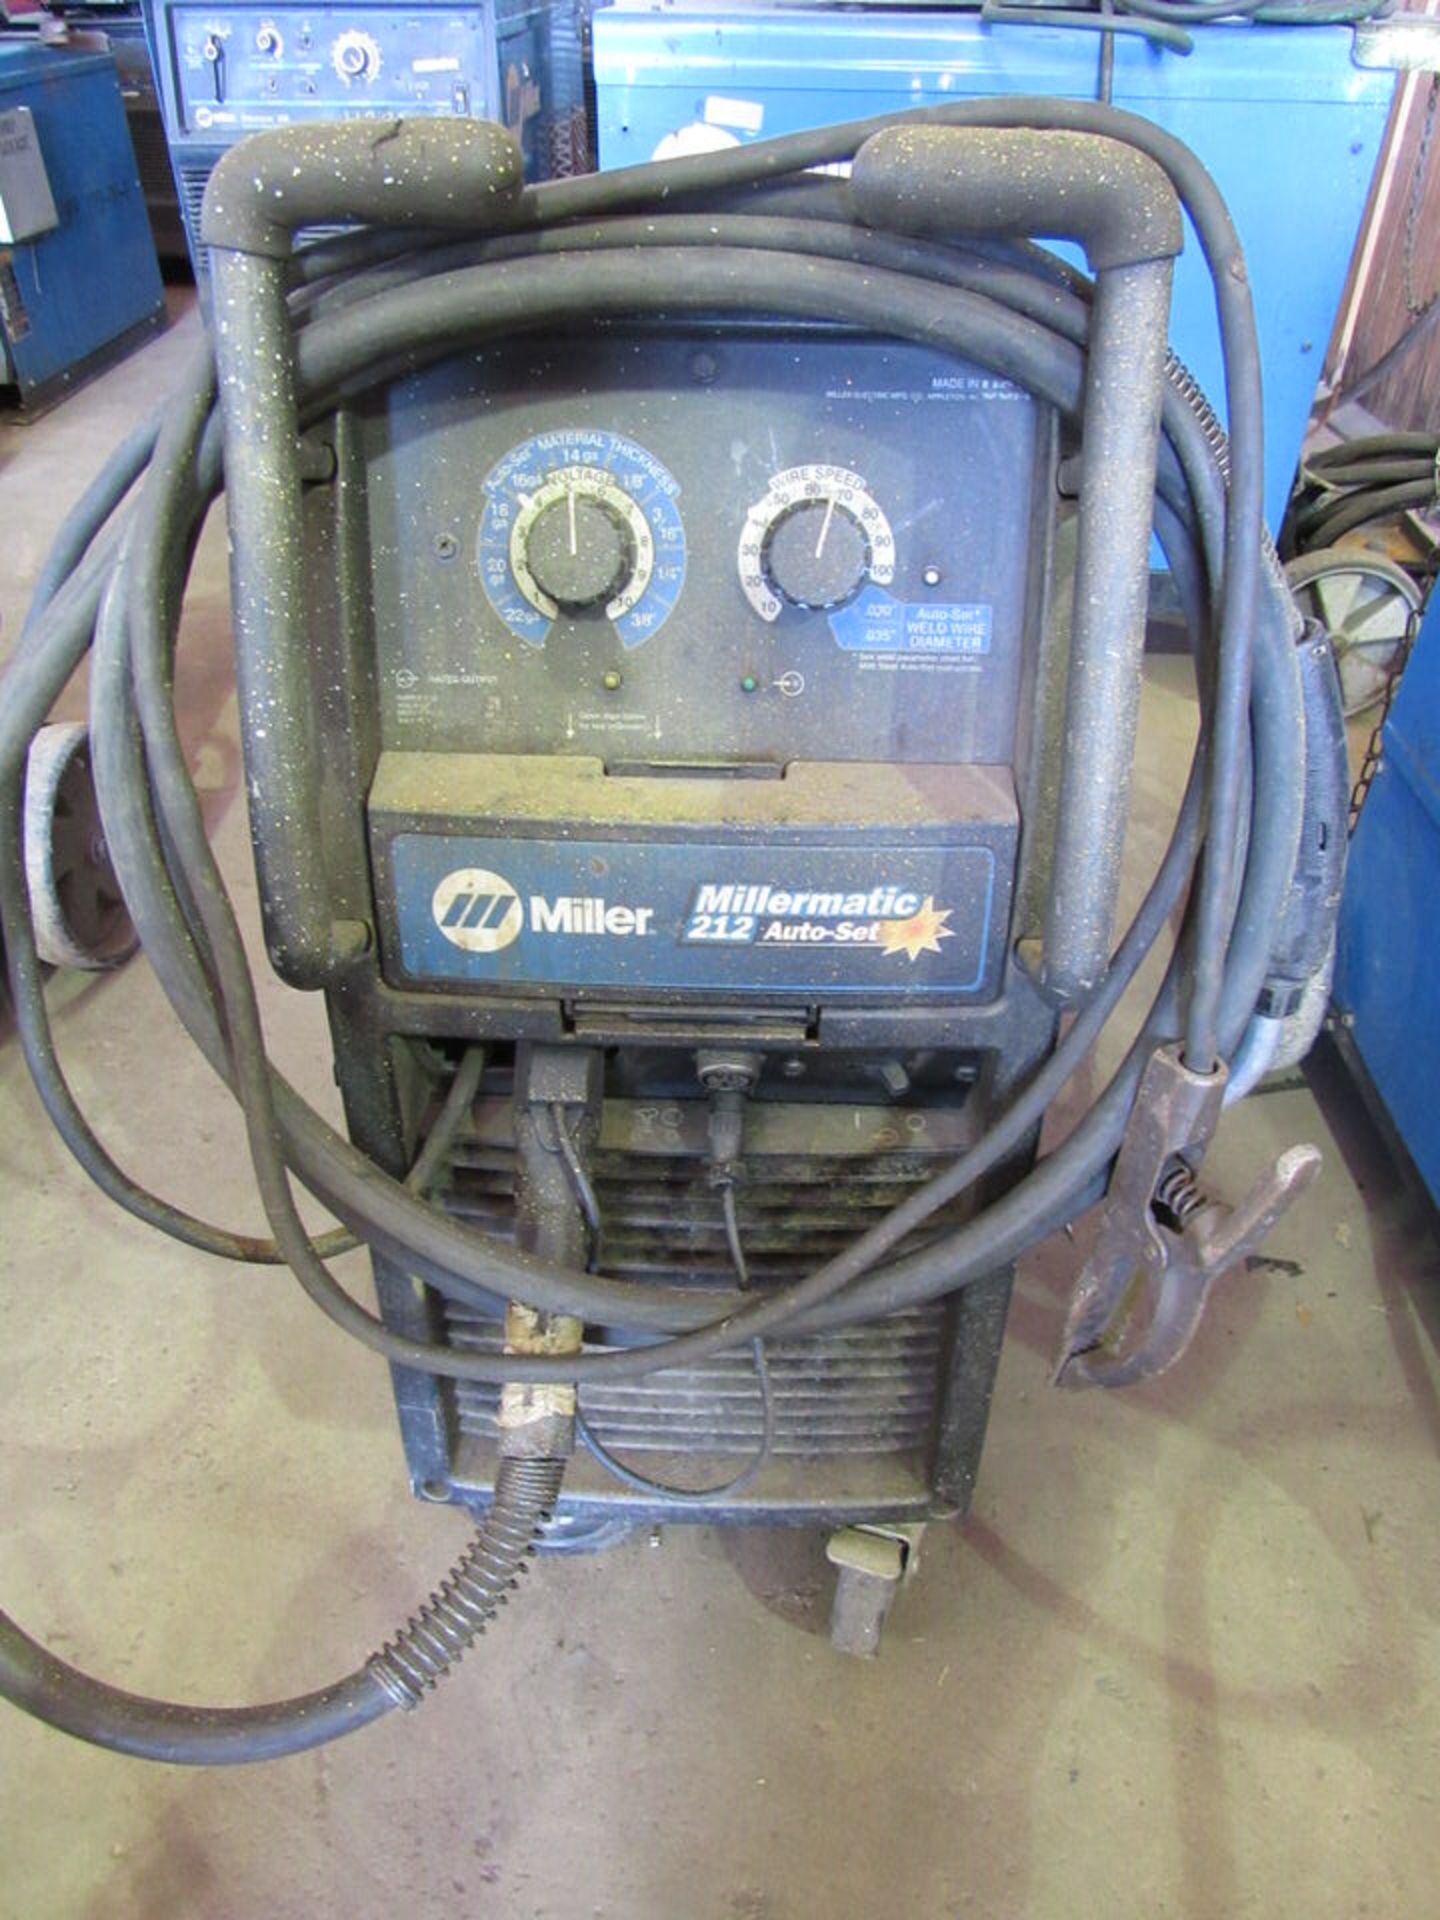 Millermatic 212 welder, S/N MD121255N